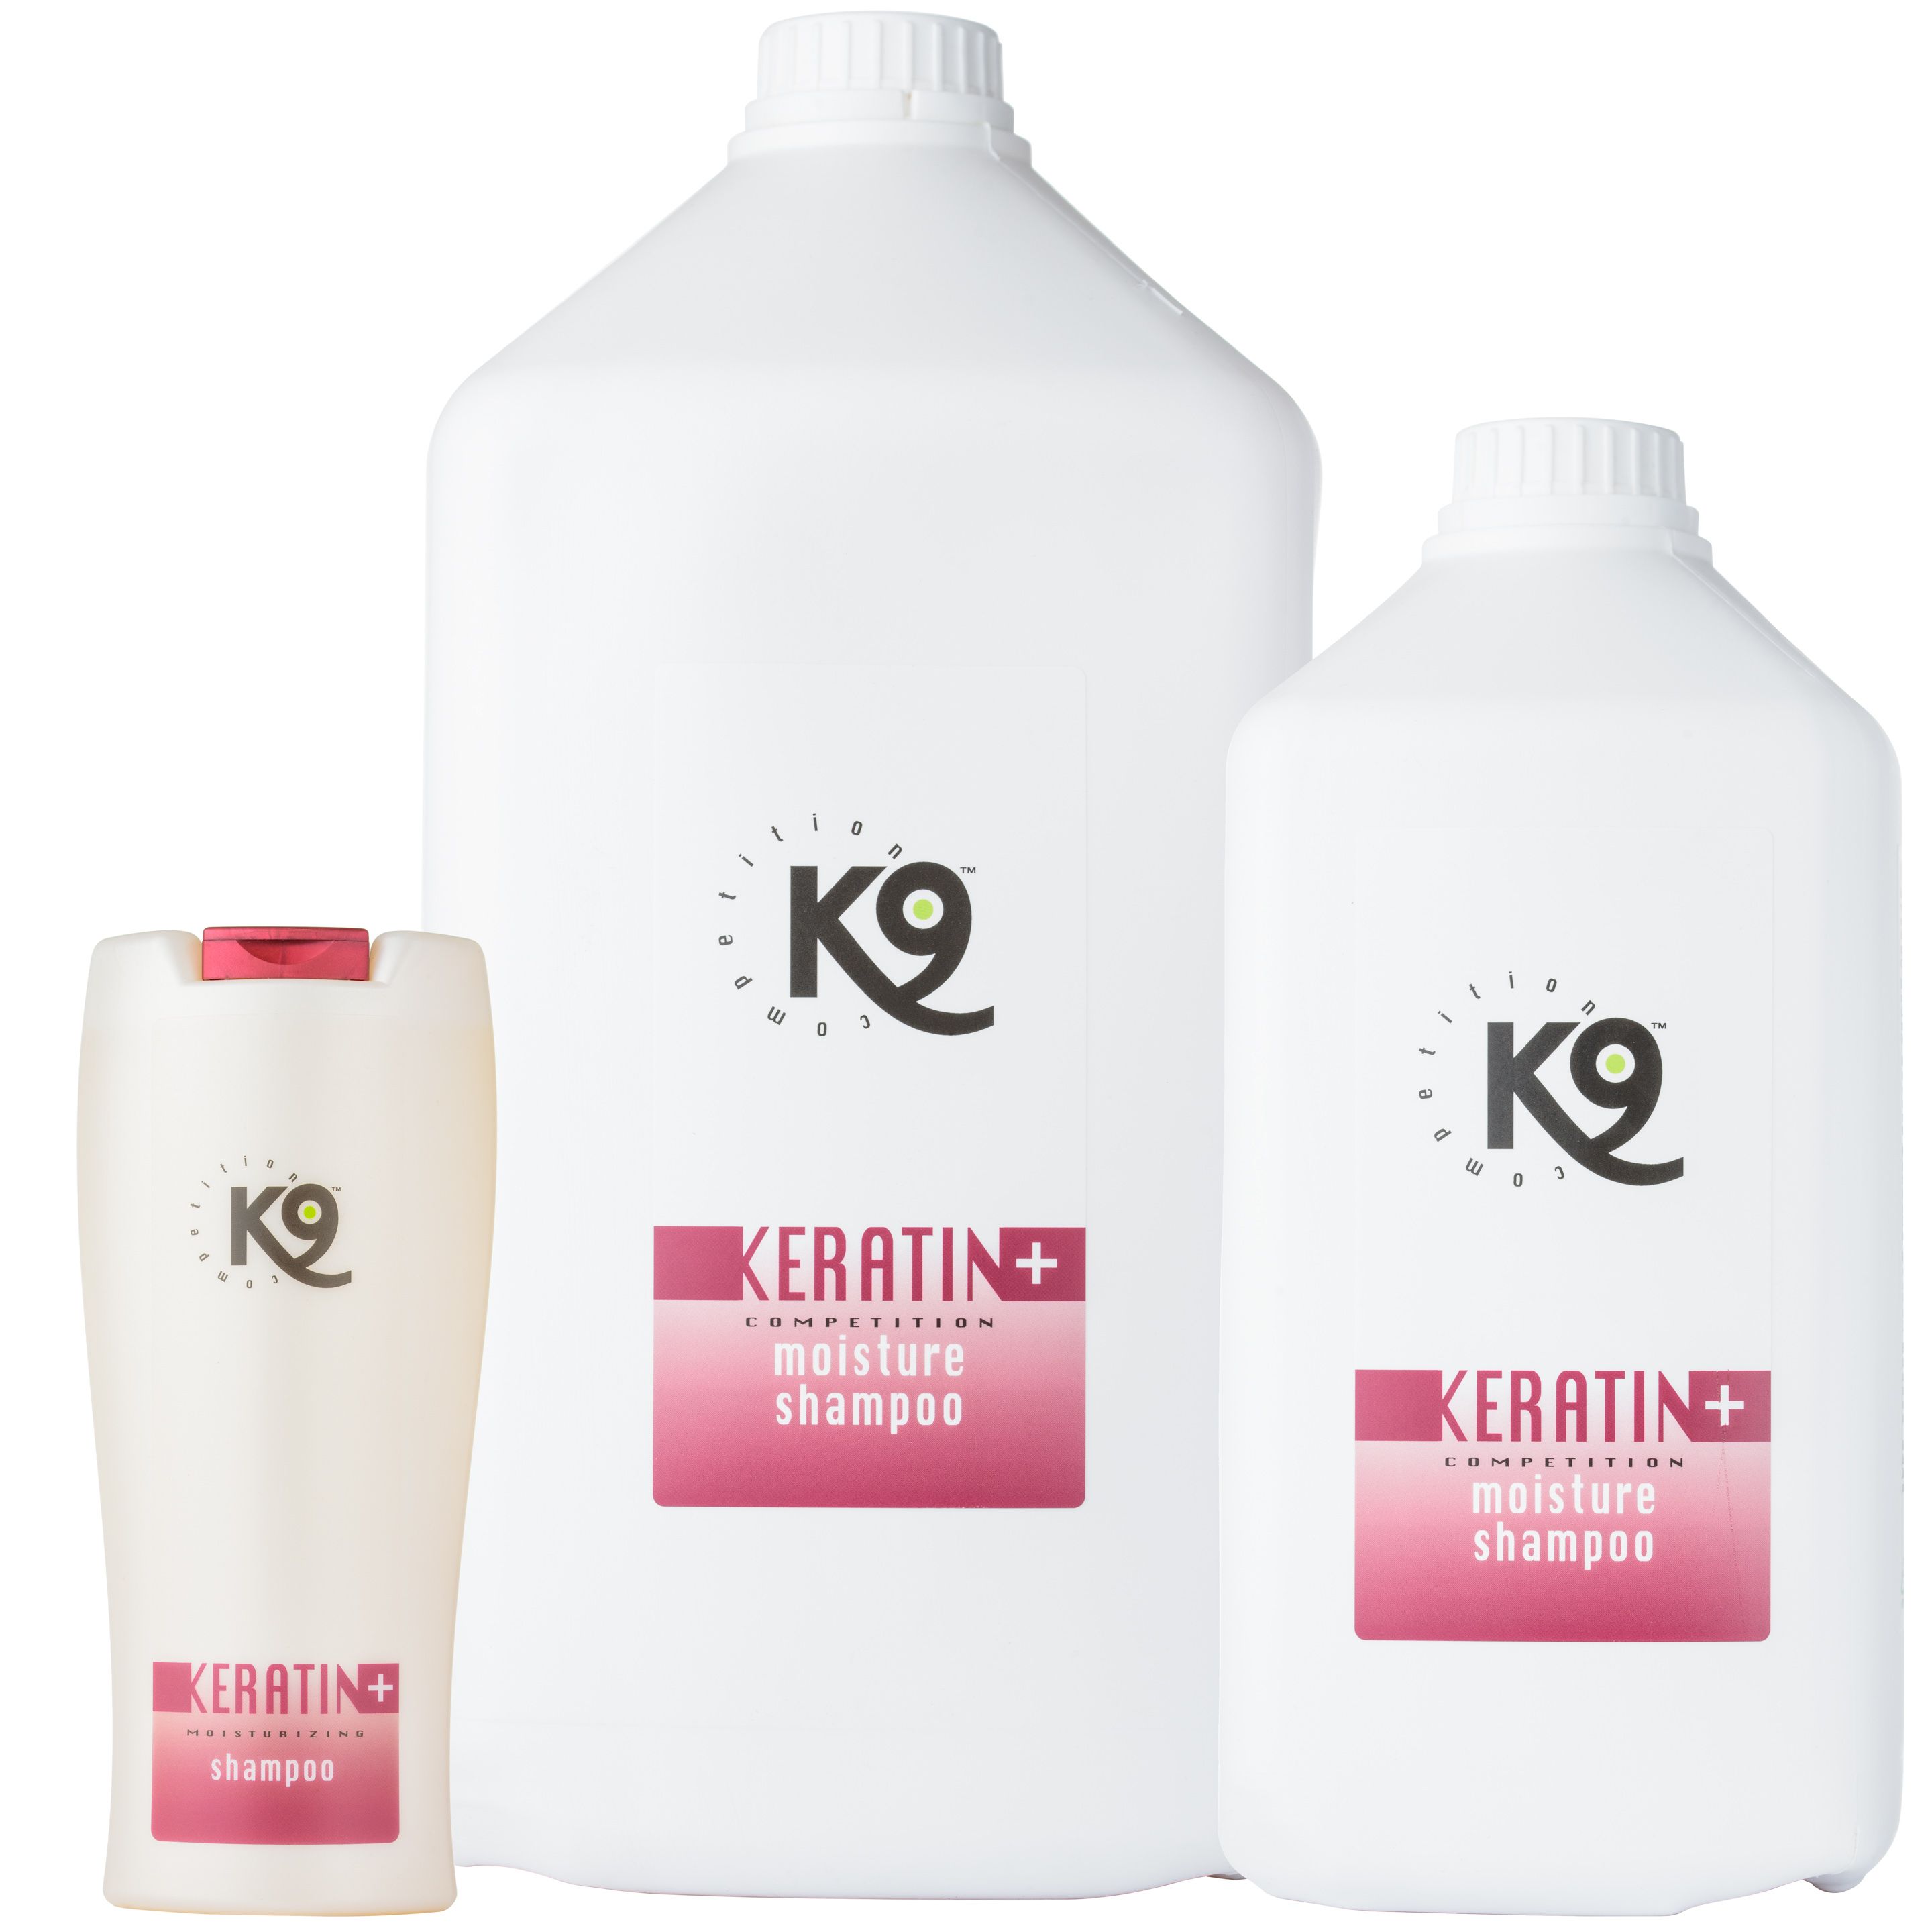 szampon dla maltańczyka k9